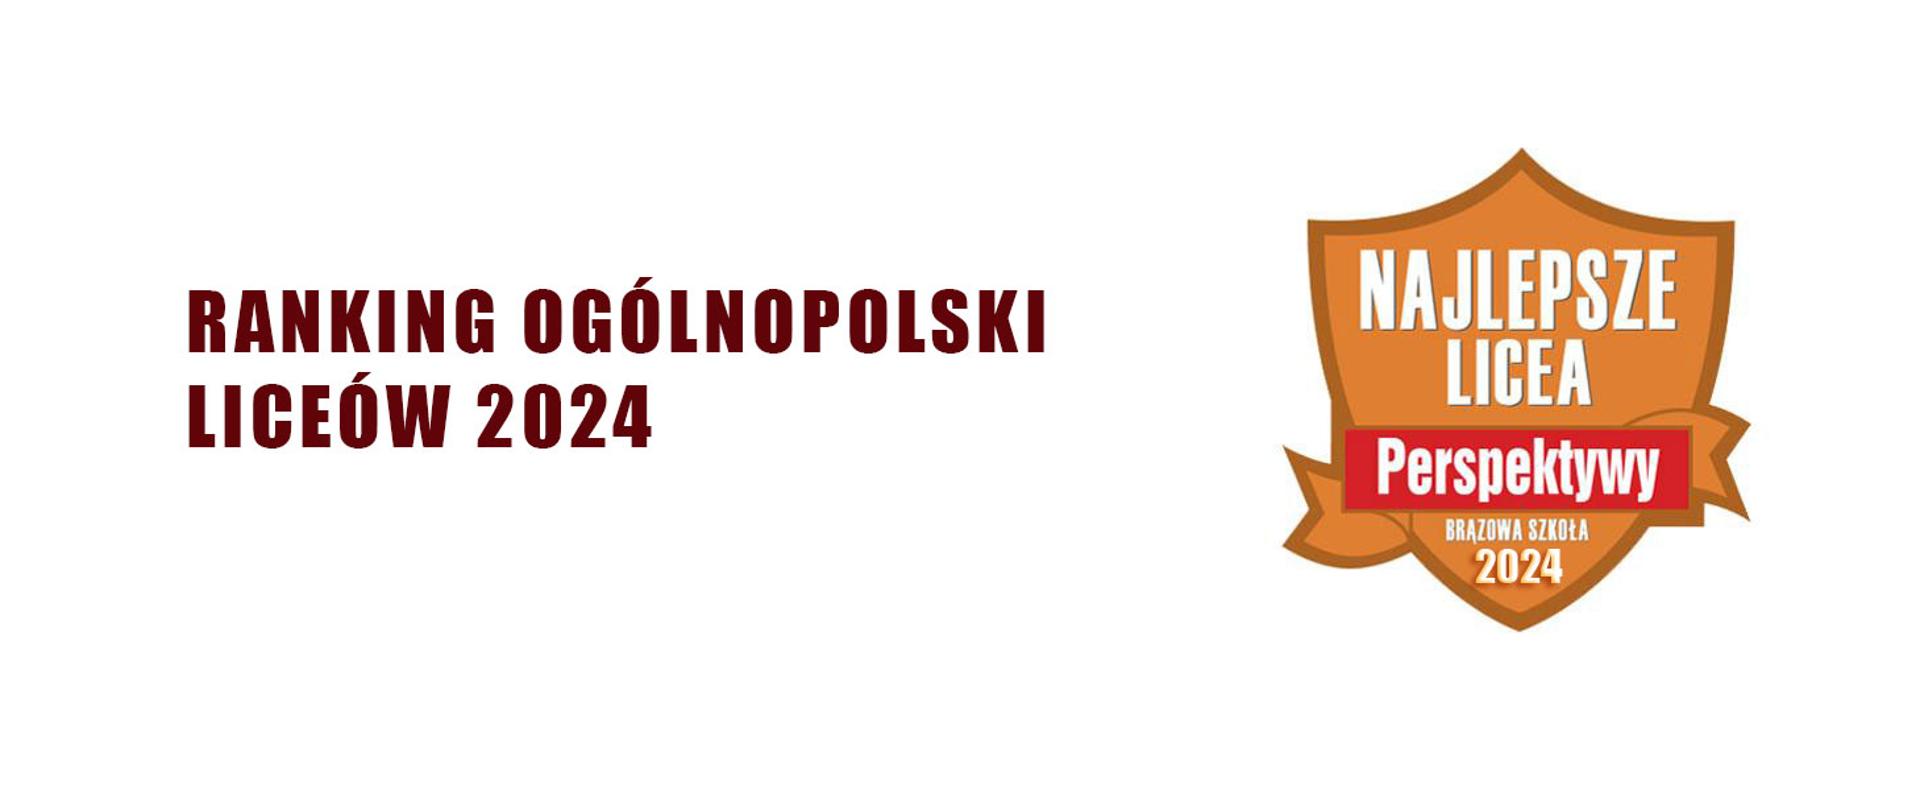 na białym tle napis Ranking Ogólnopolski Liceów 2024 oraz brązowa tarcza Perspektywy najlepsze licea 2024